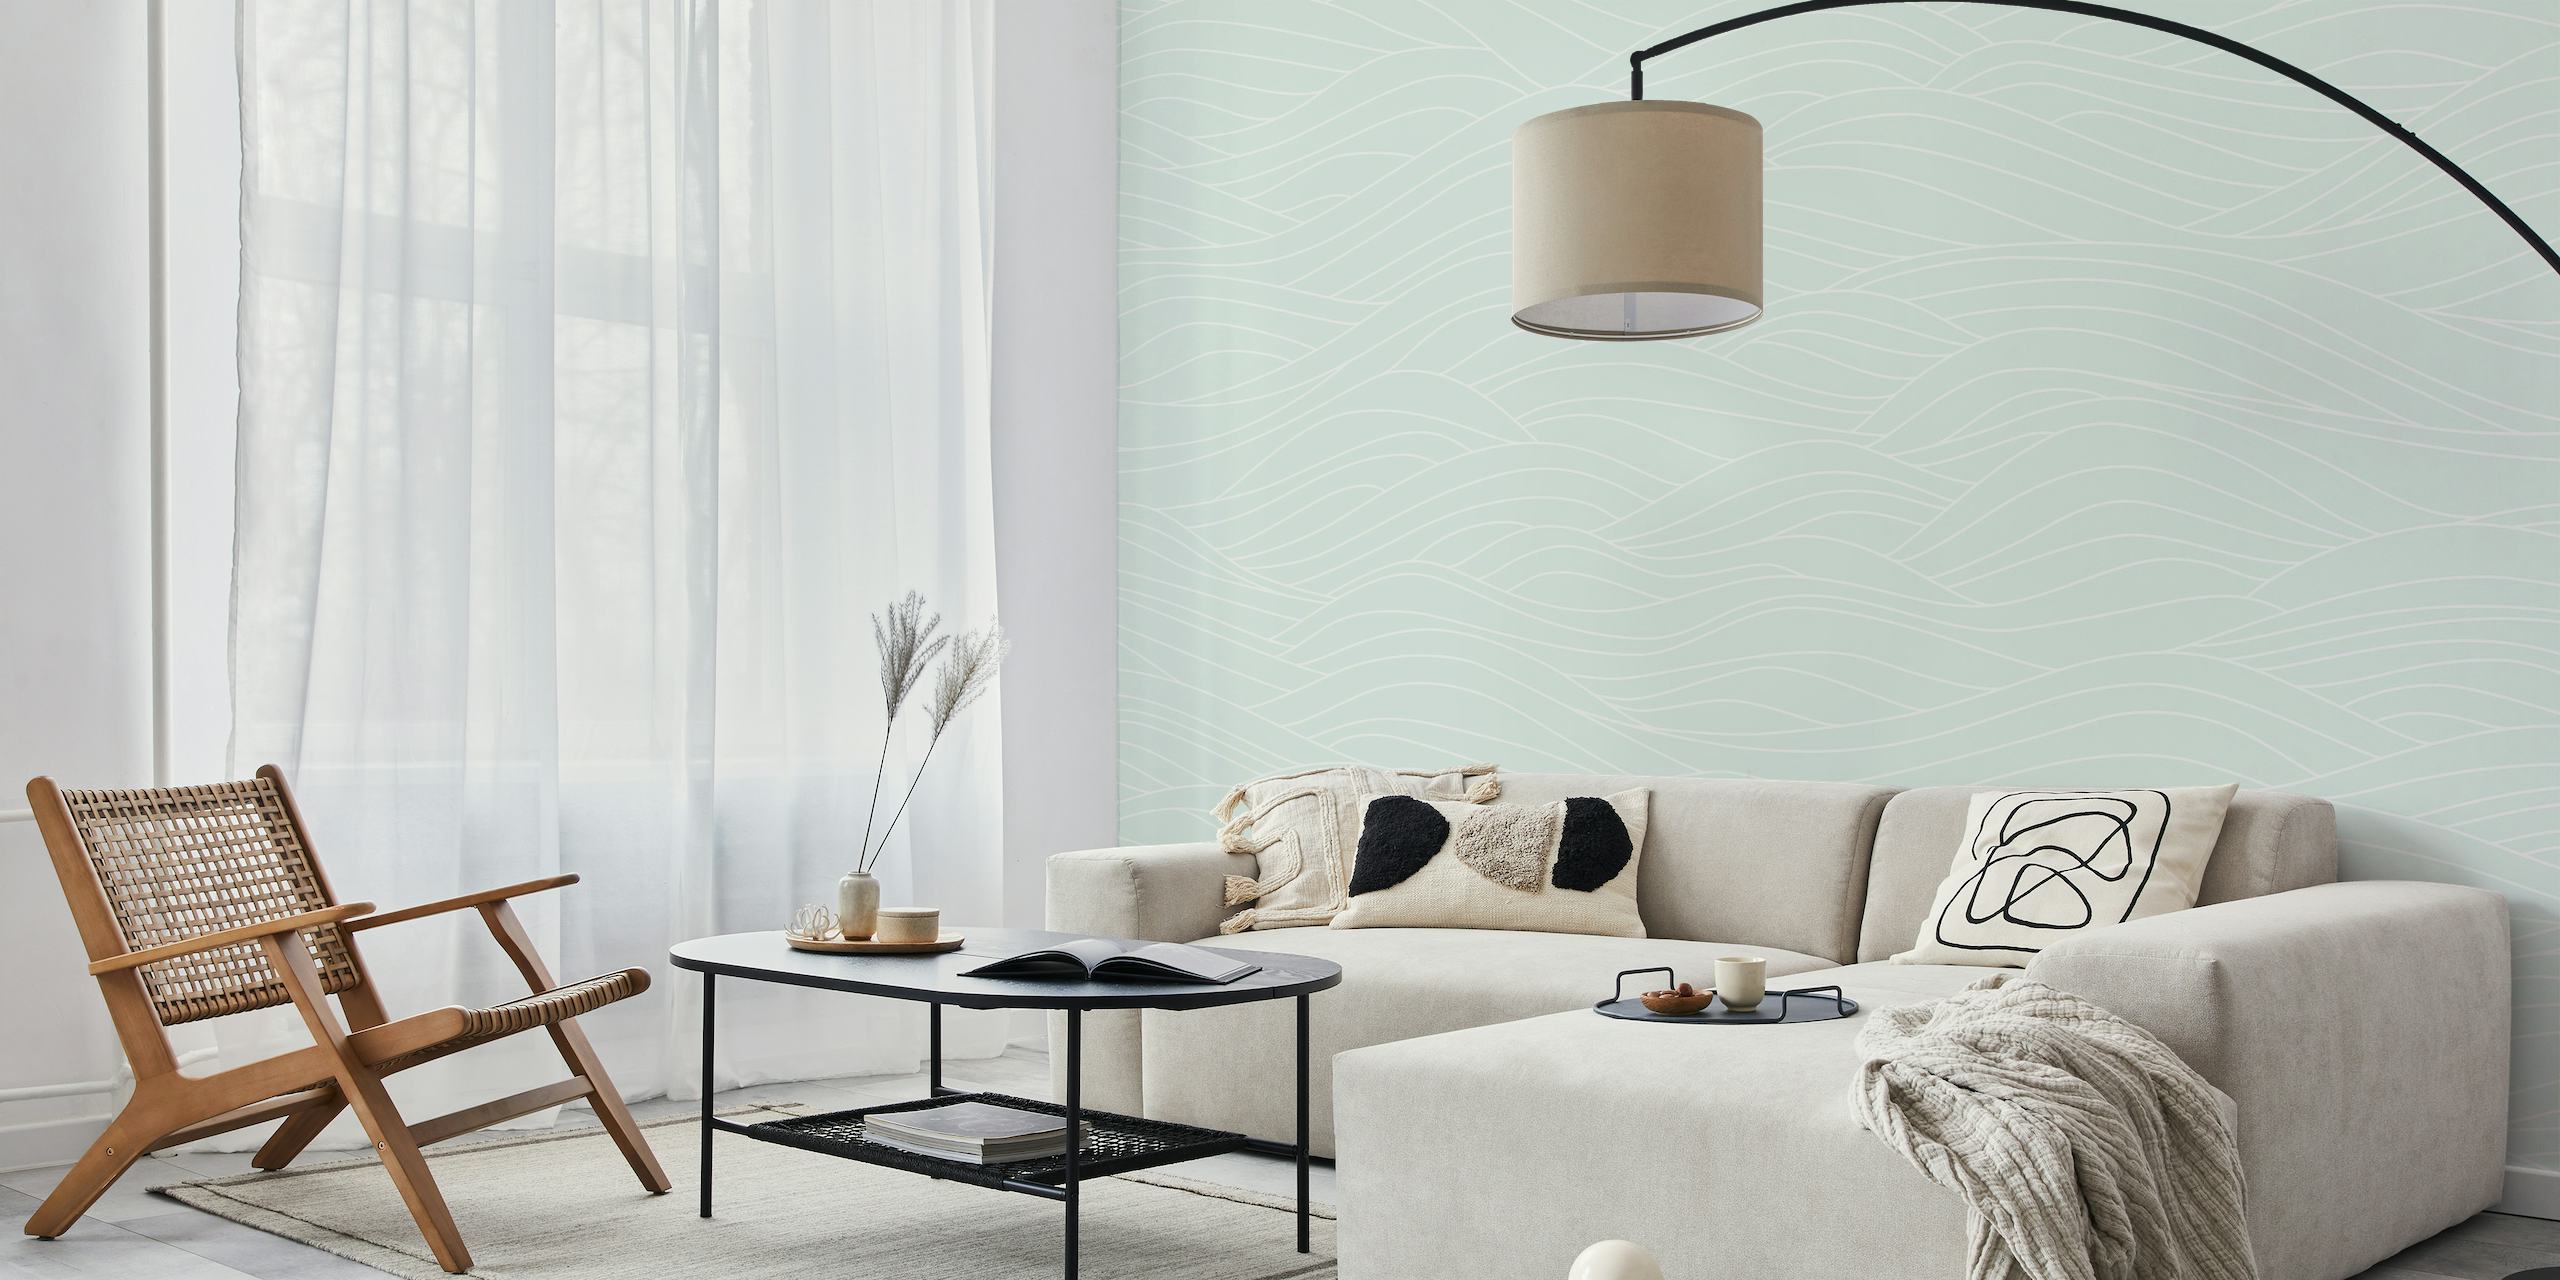 Fotomural con estampado de ondas verdes abstractas para una decoración interior relajante